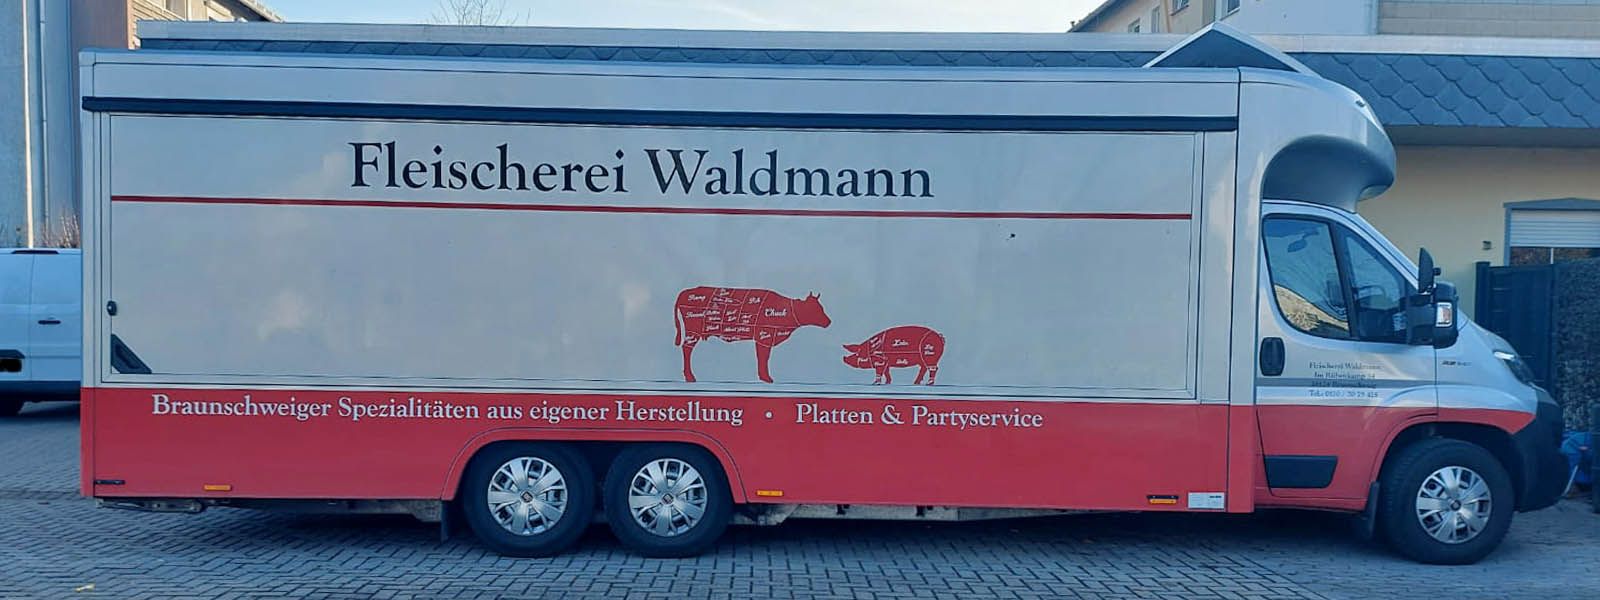 Fleischerei Waldmann Header Wagen